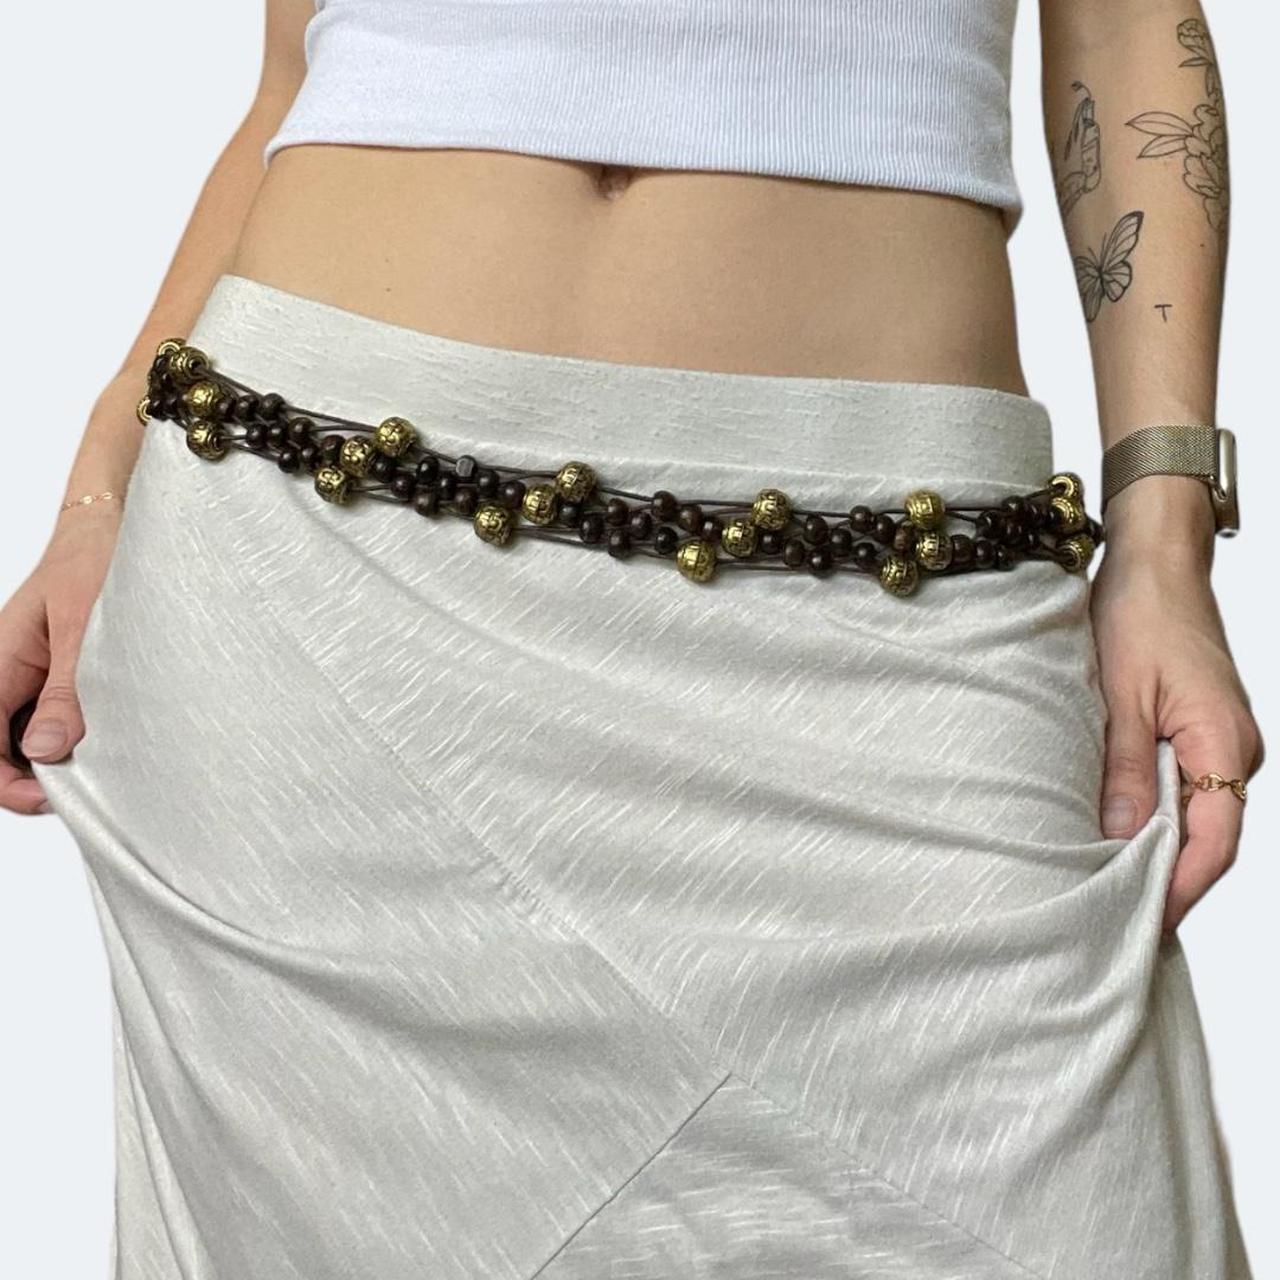 Women's Tan Gold Chain Waist Belt